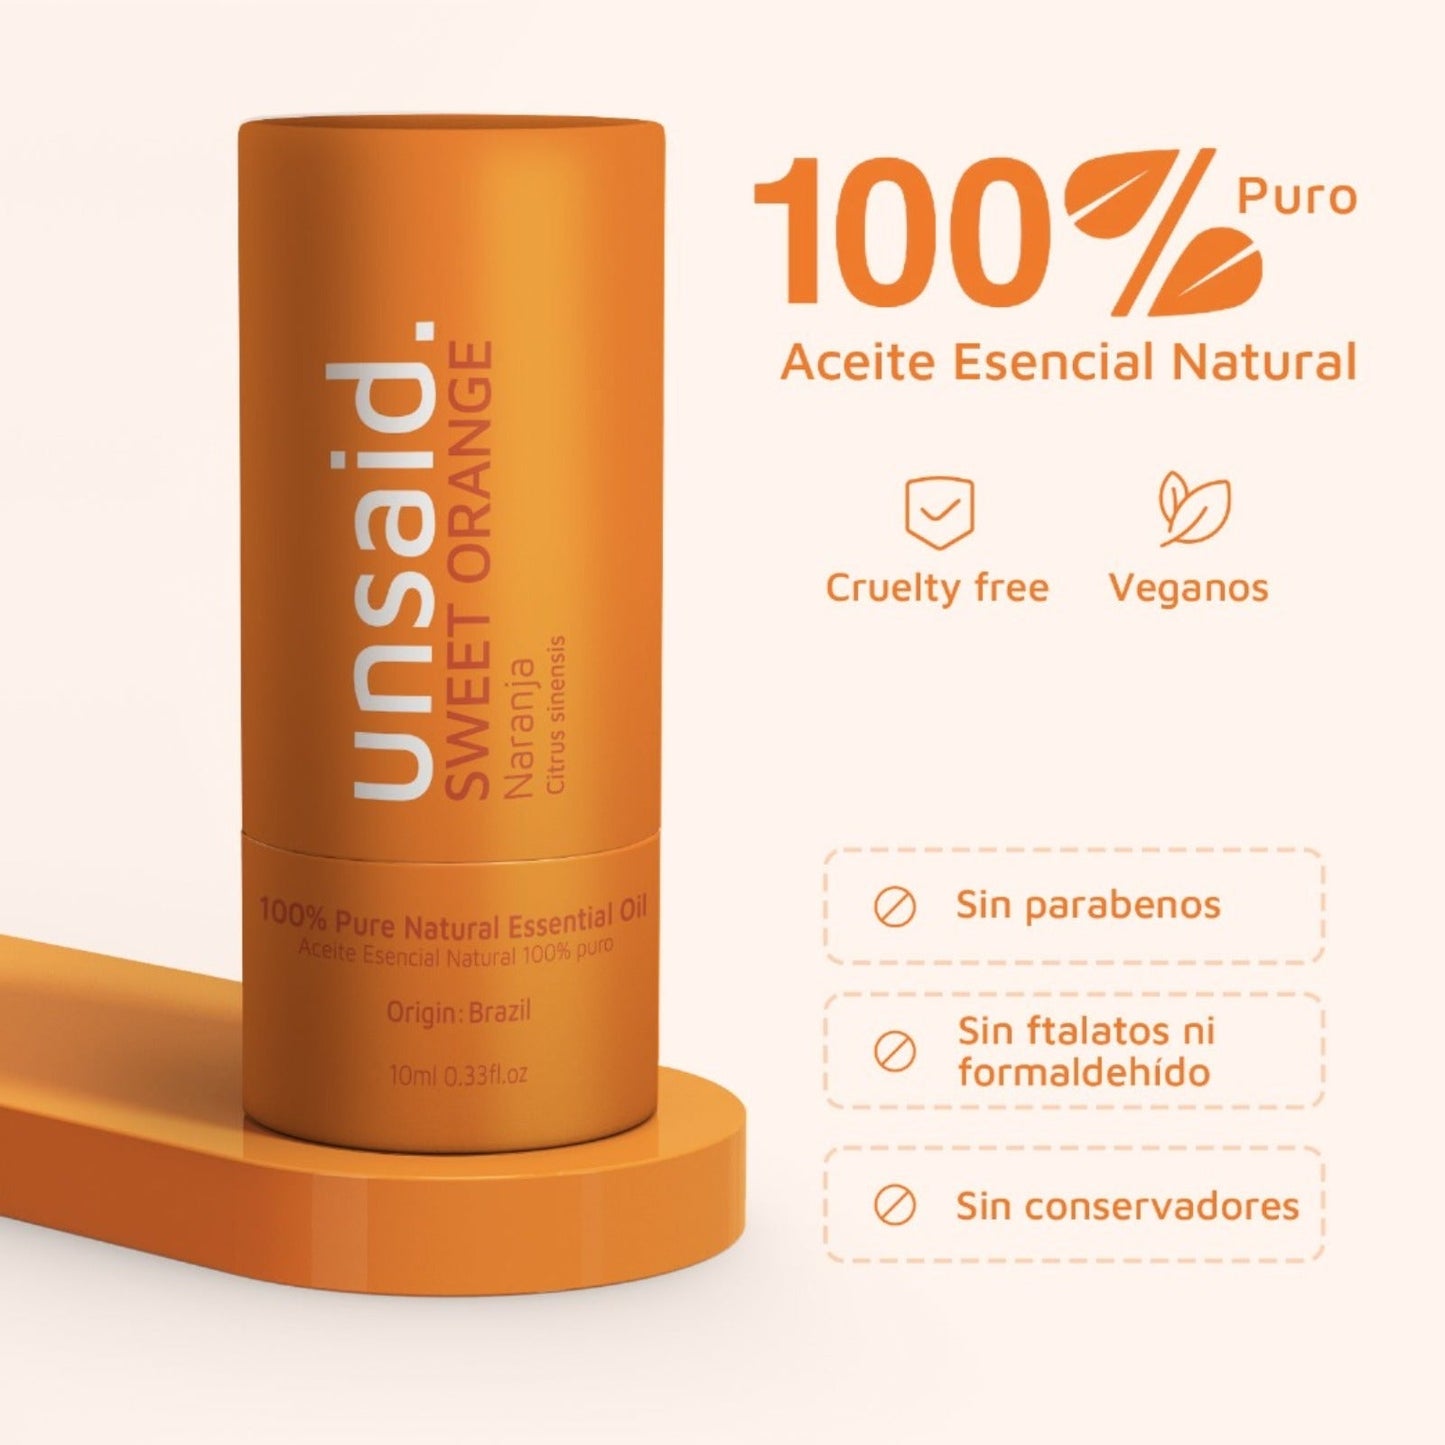 aceite-esencial-de-naranja-100-puro-de-10-ml-unsaid